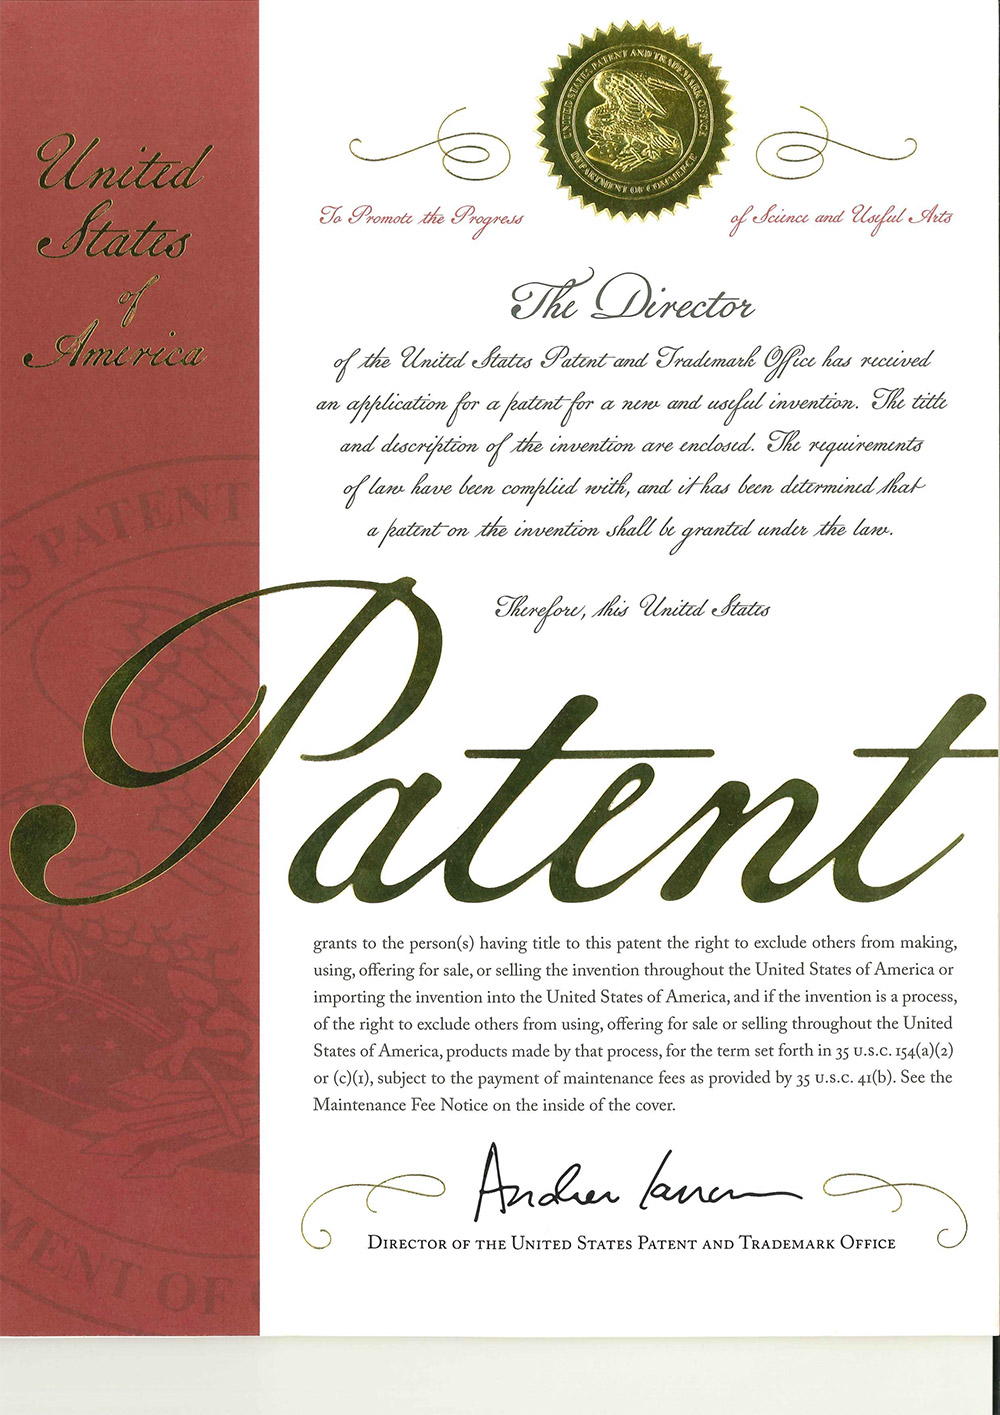 U.S. Patent Certificate